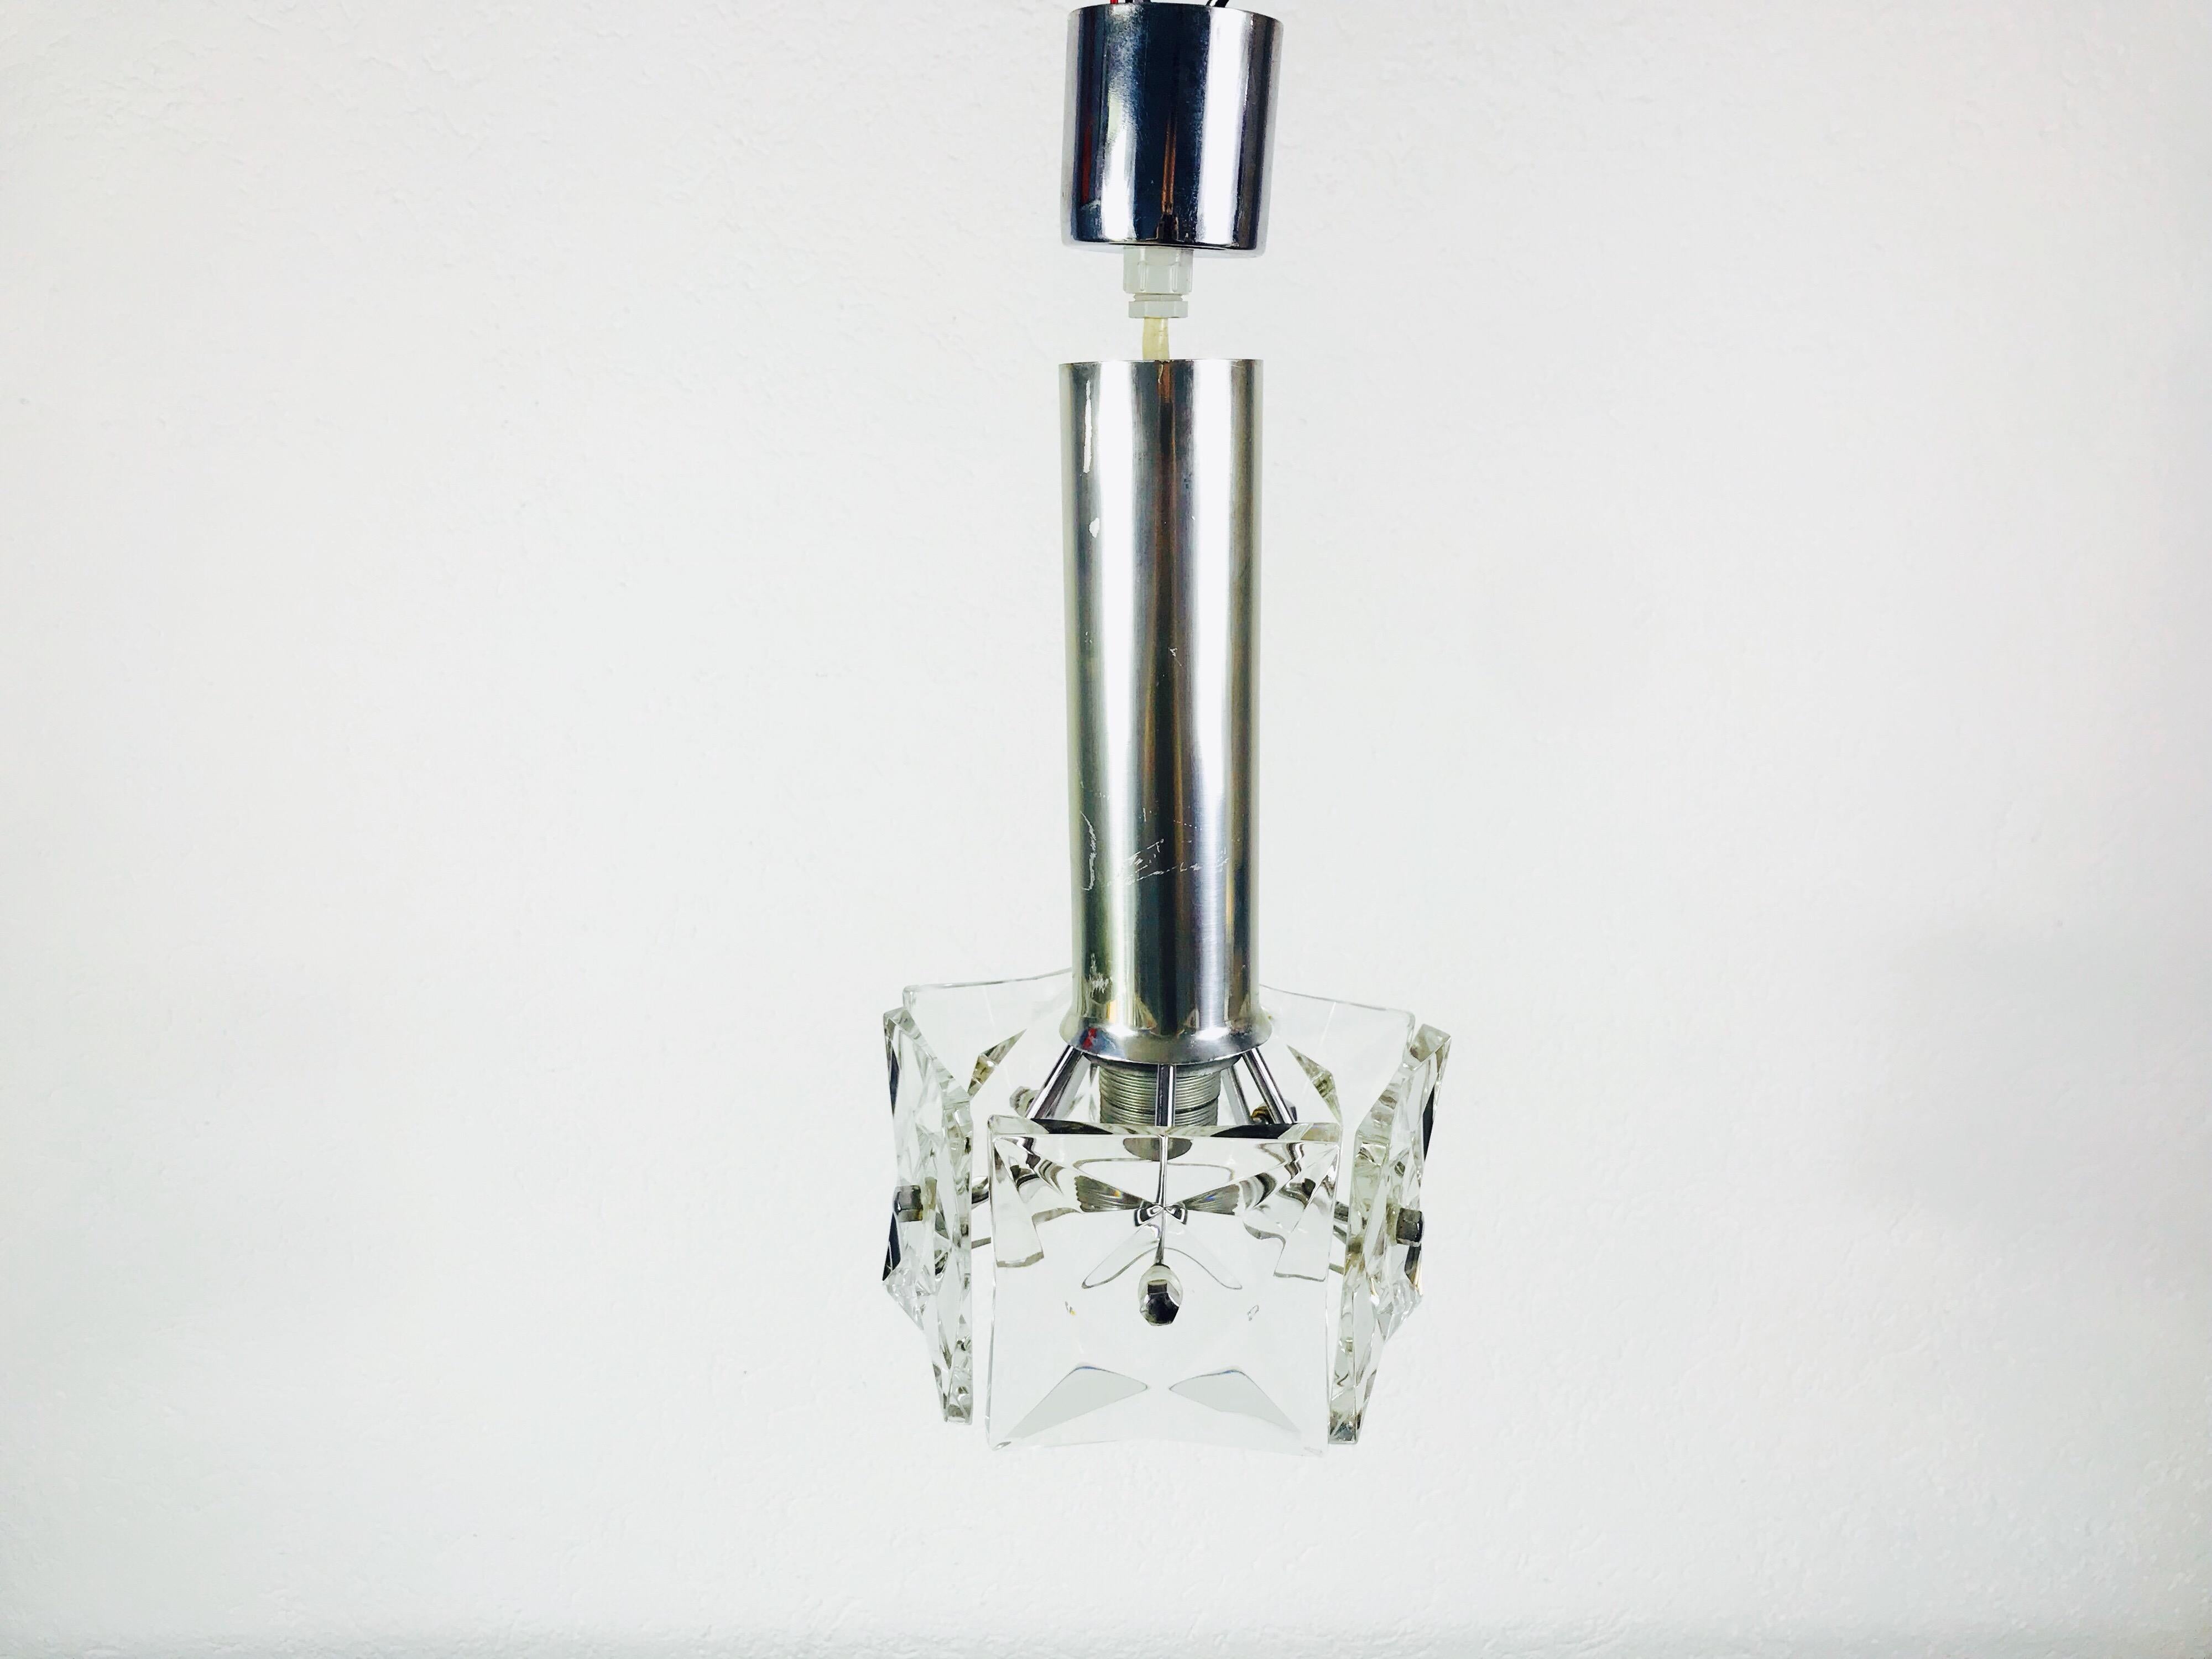 Ein Kinkeldey-Kronleuchter aus Eisglas, hergestellt in Deutschland in den 1960er Jahren. Die Leuchte besteht aus einem Aluminiumgehäuse und fünf Teilen aus Eisglas.

Abmessungen:

Höhe 40 cm

Durchmesser 19 cm

Die Leuchte benötigt eine